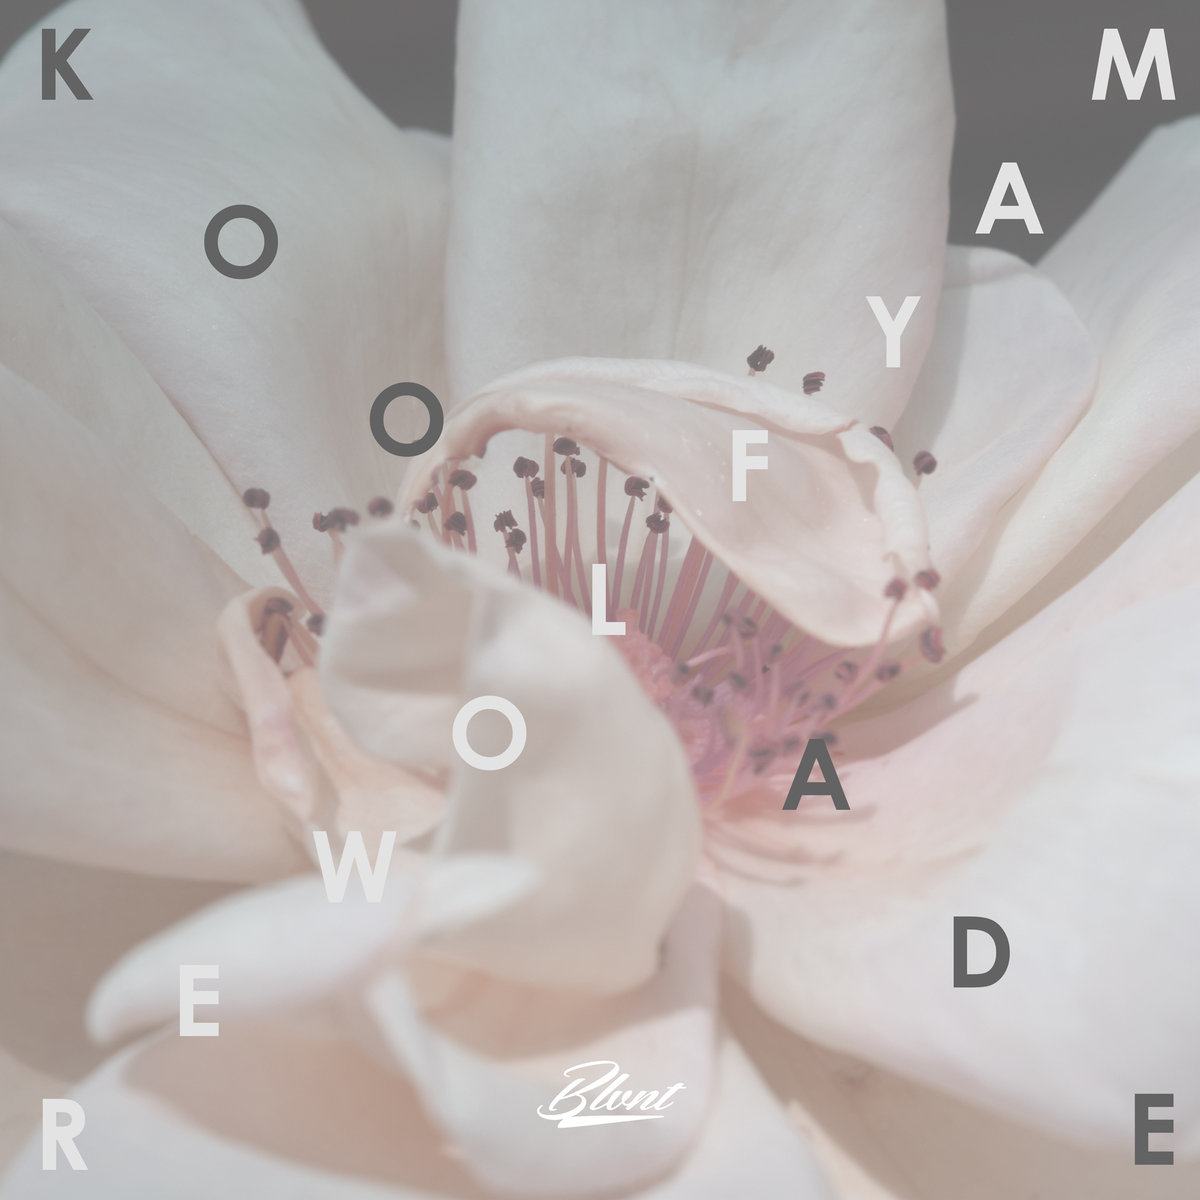 Koolade - "Mayflower" (Release)